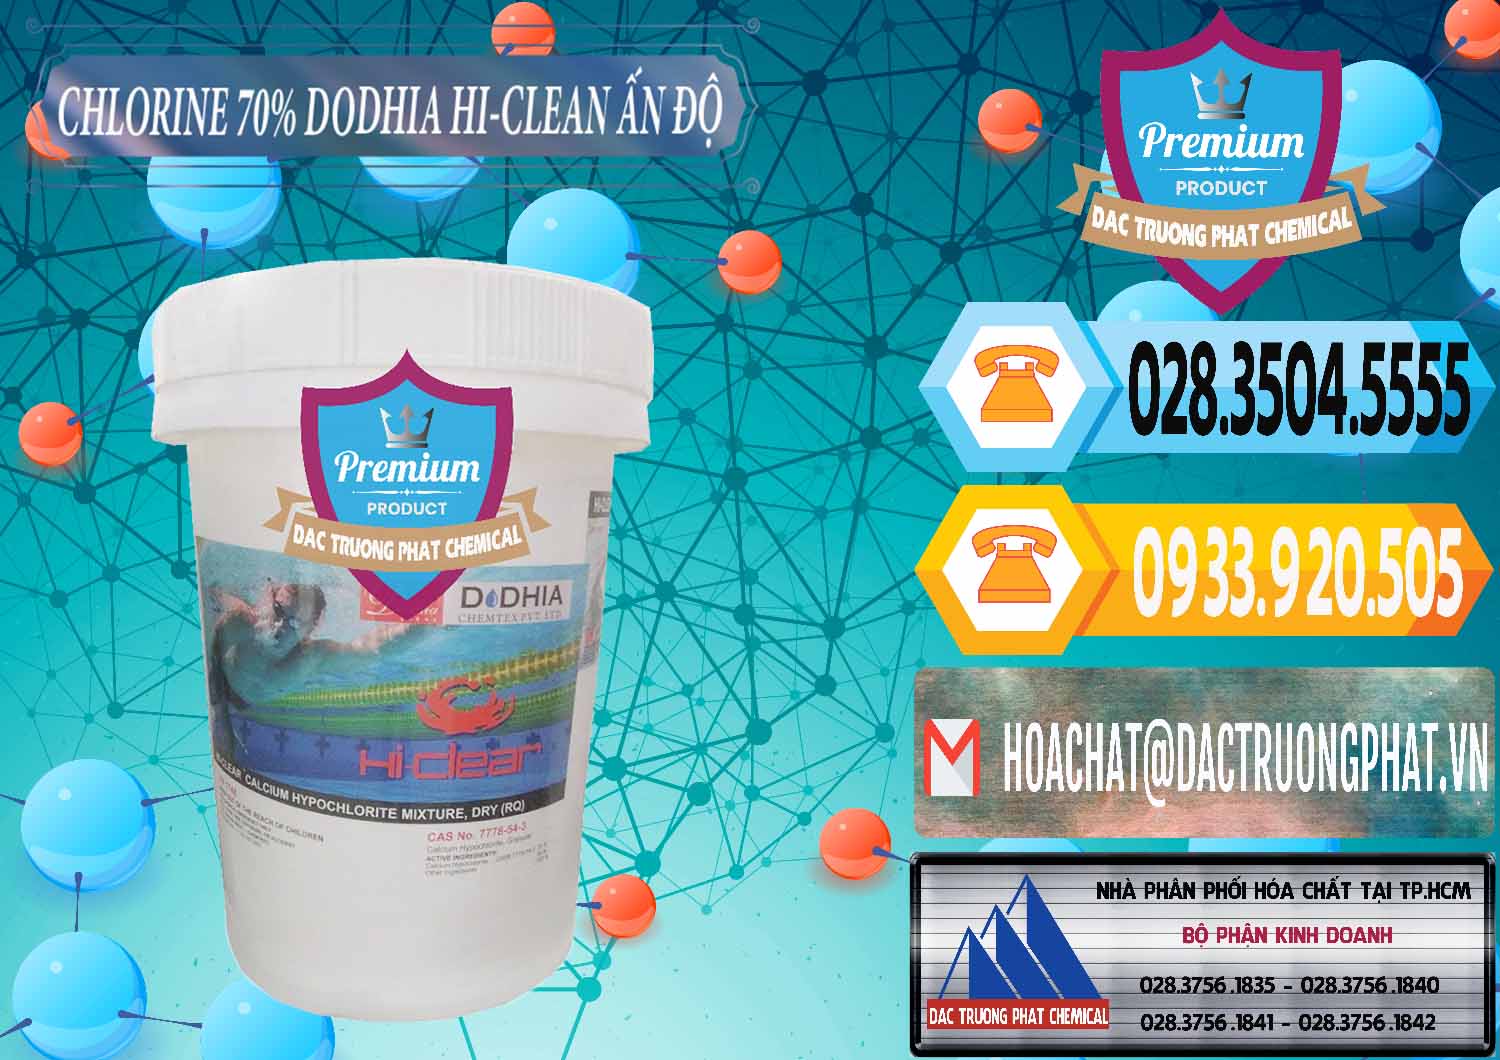 Cty bán ( cung ứng ) Chlorine – Clorin 70% Dodhia Hi-Clean Ấn Độ India - 0214 - Đơn vị chuyên bán & cung cấp hóa chất tại TP.HCM - hoachattayrua.net